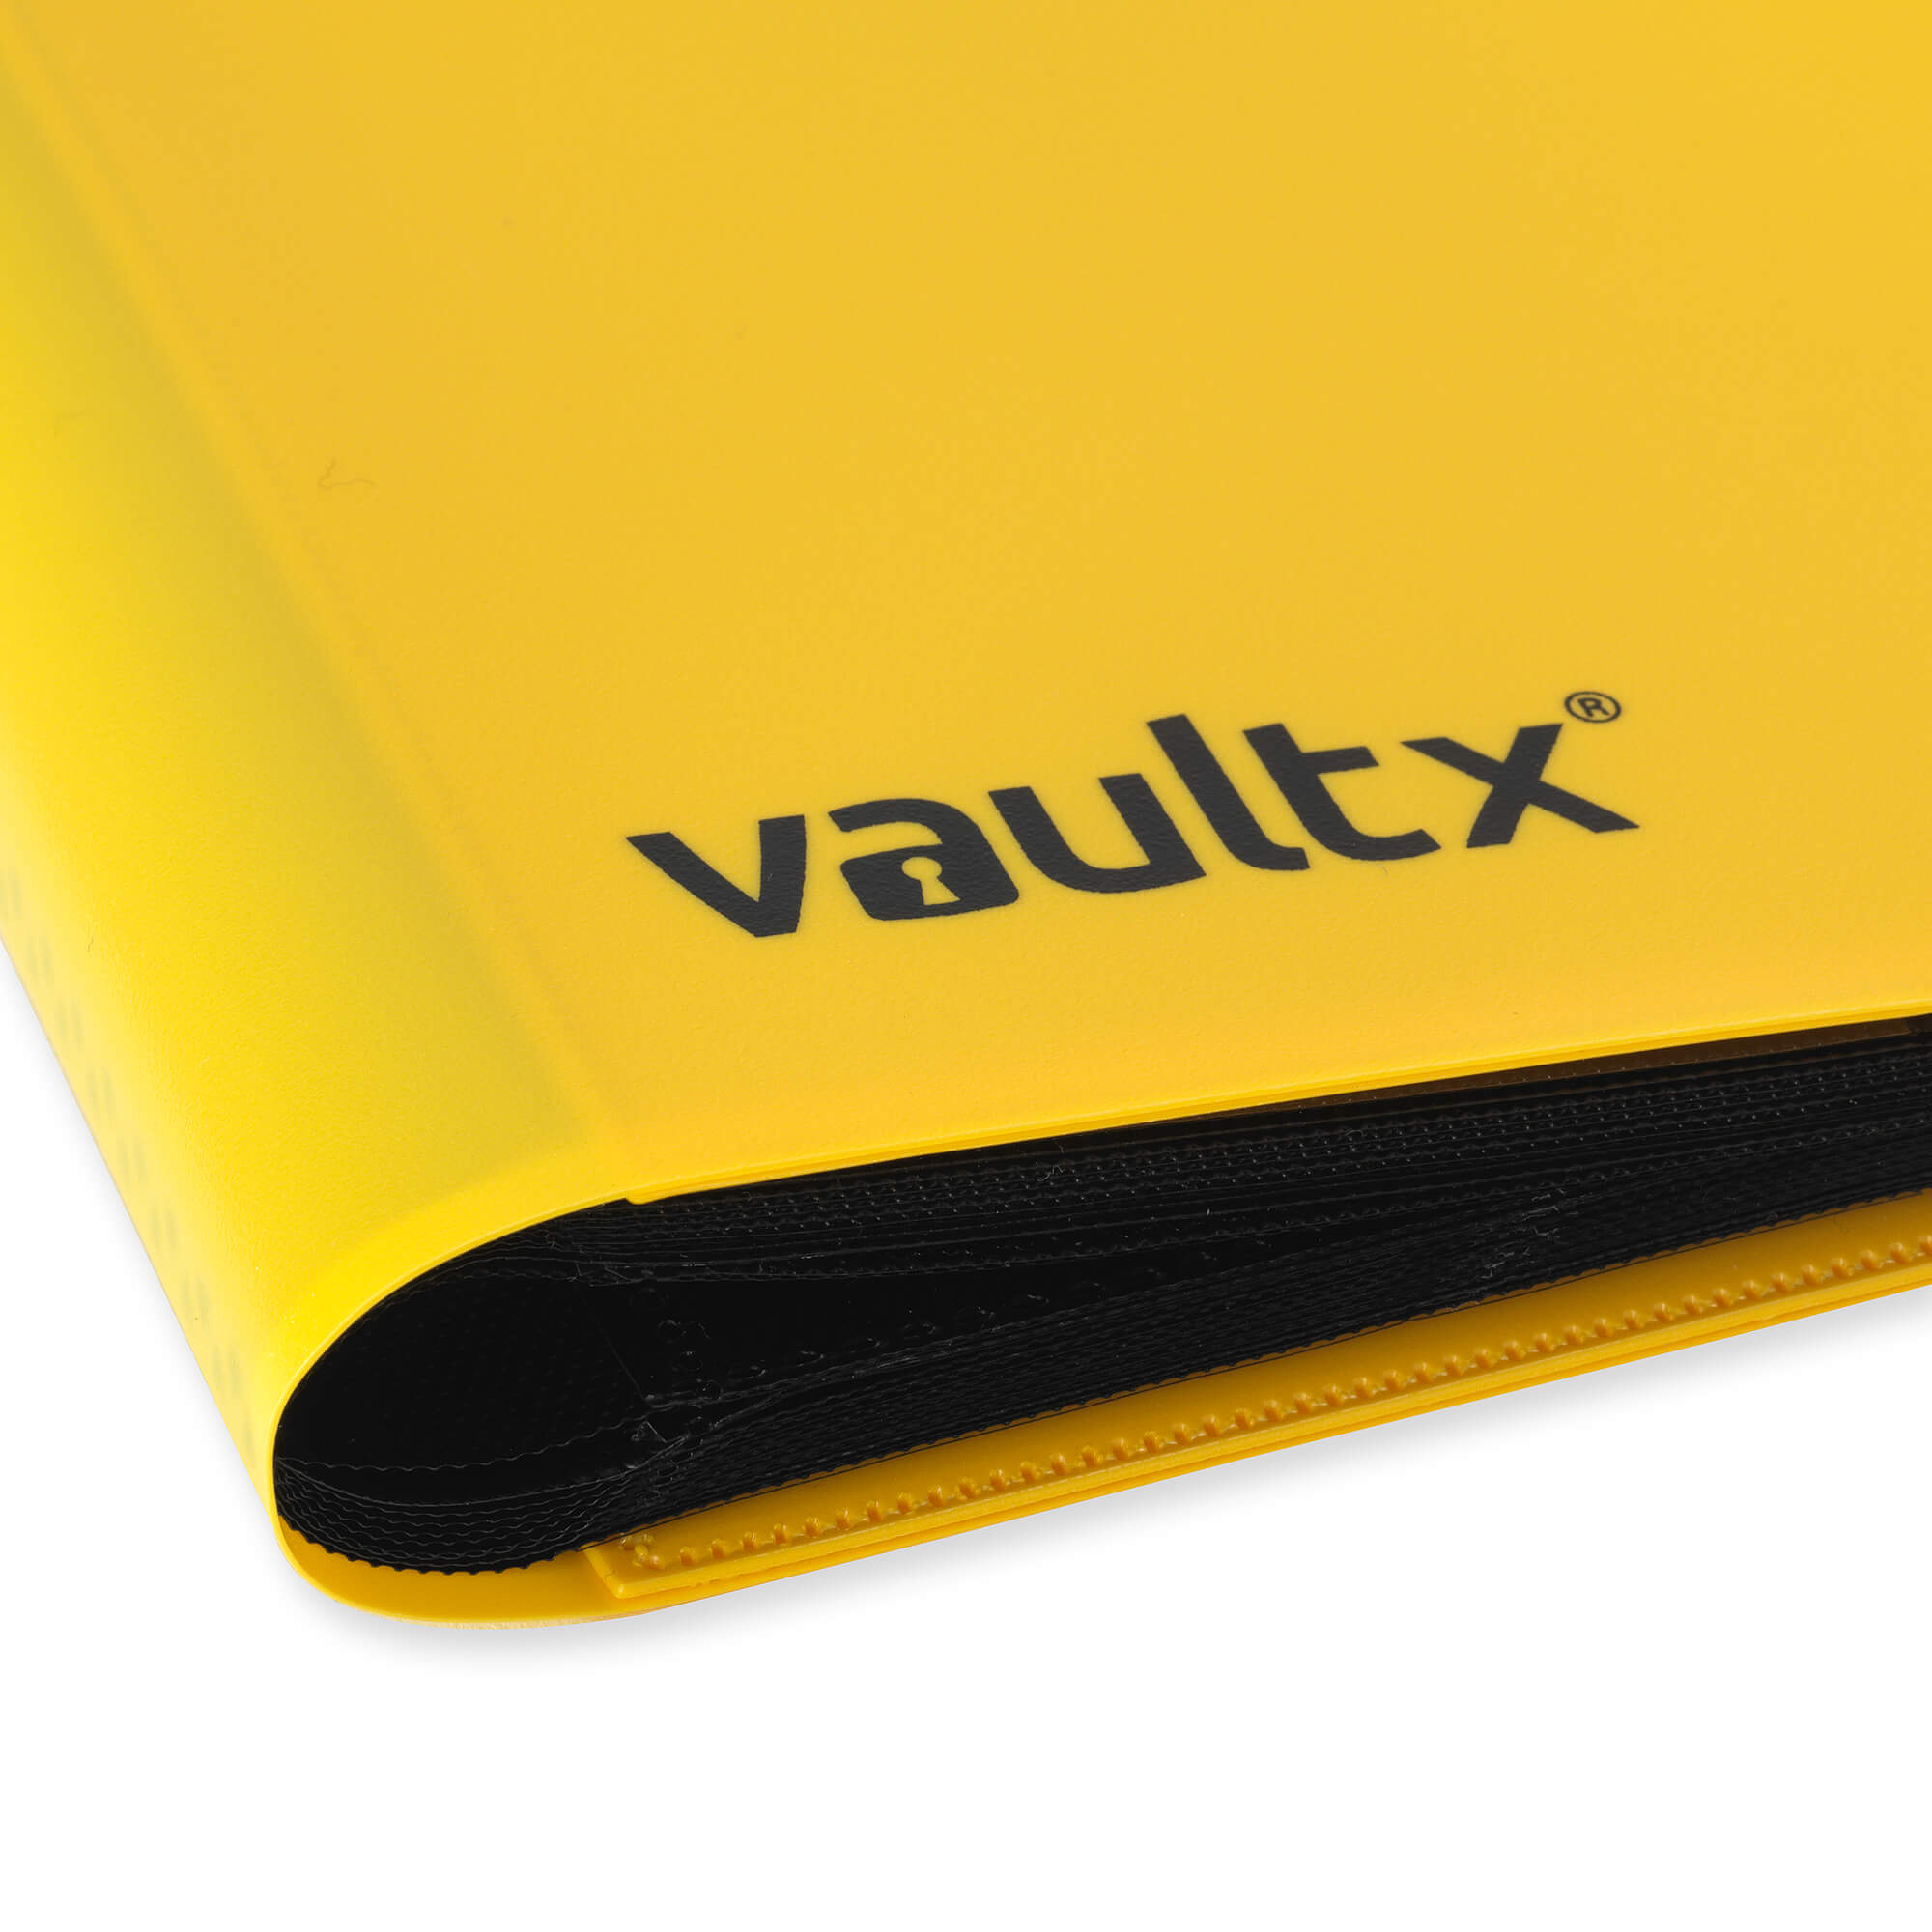 9-Pocket Strap Binder – Vault X UK